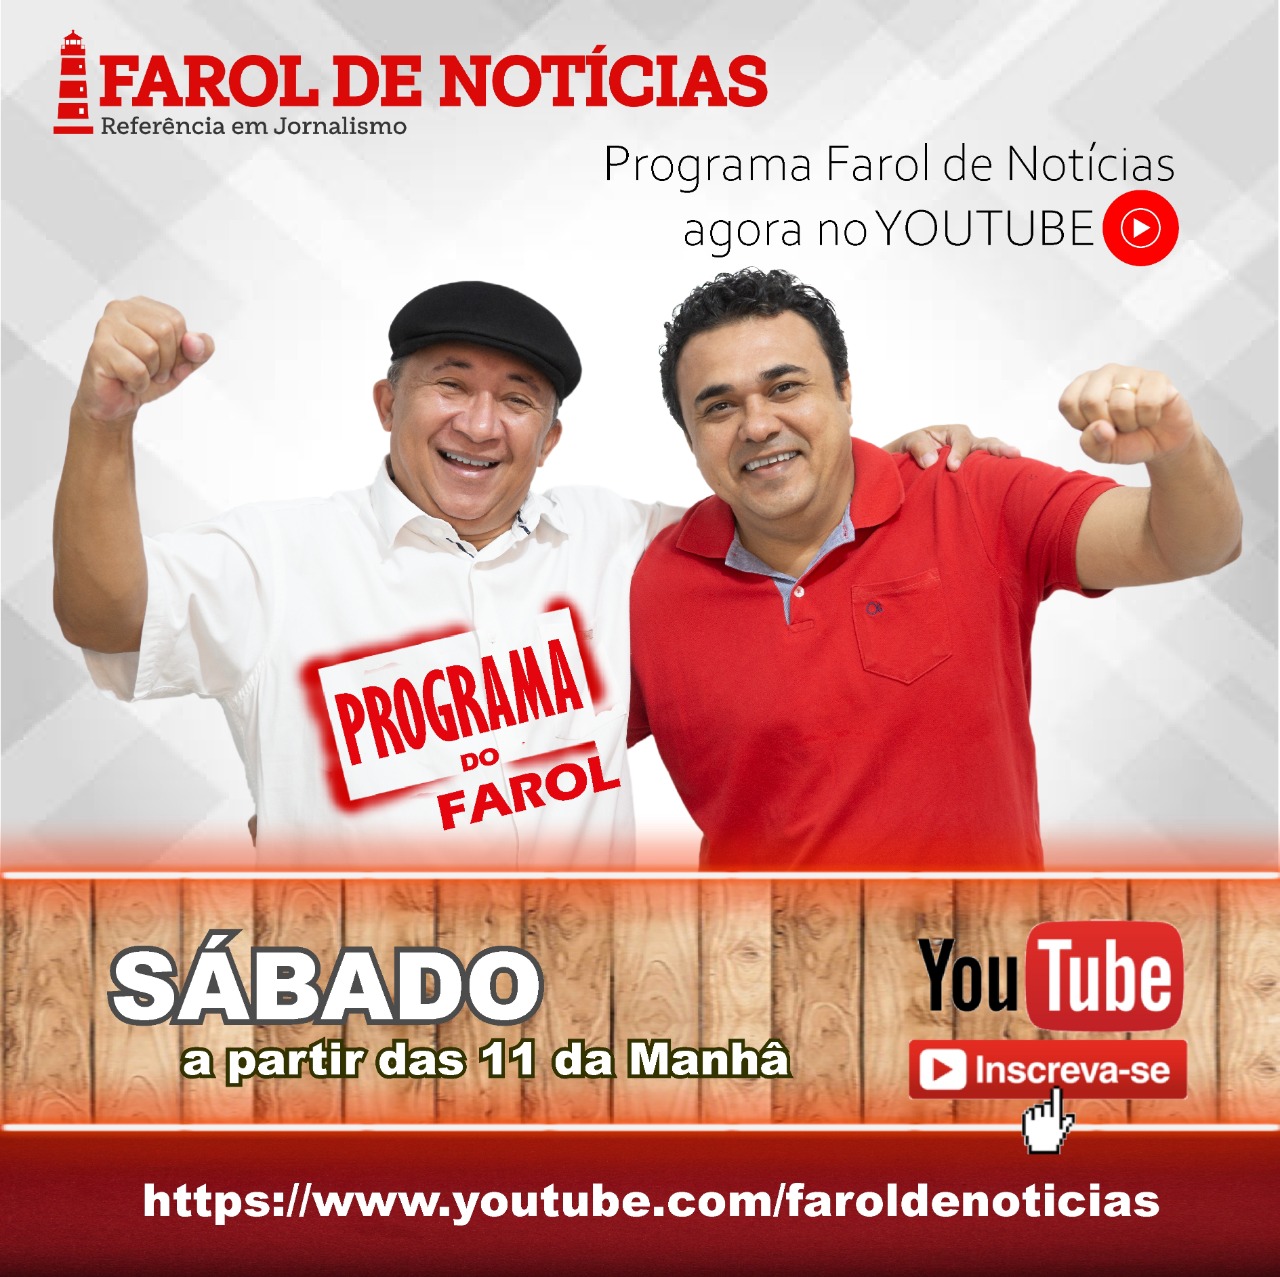 Farol ganha 500 inscritos no Youtube em 24h